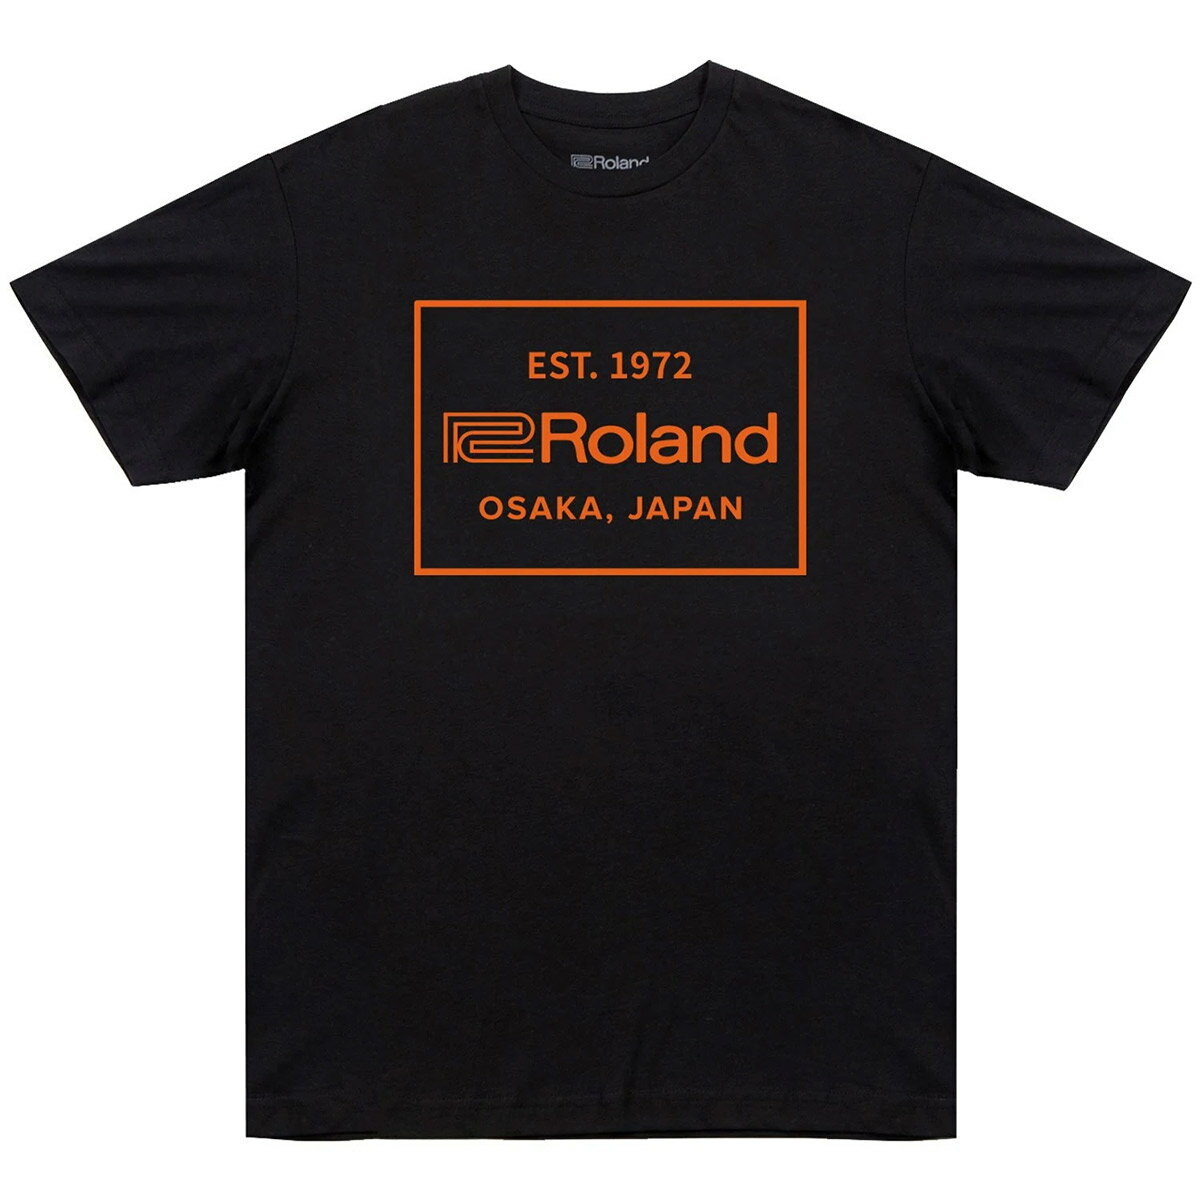 Roland EST. 1972 T-Shirt ローランド